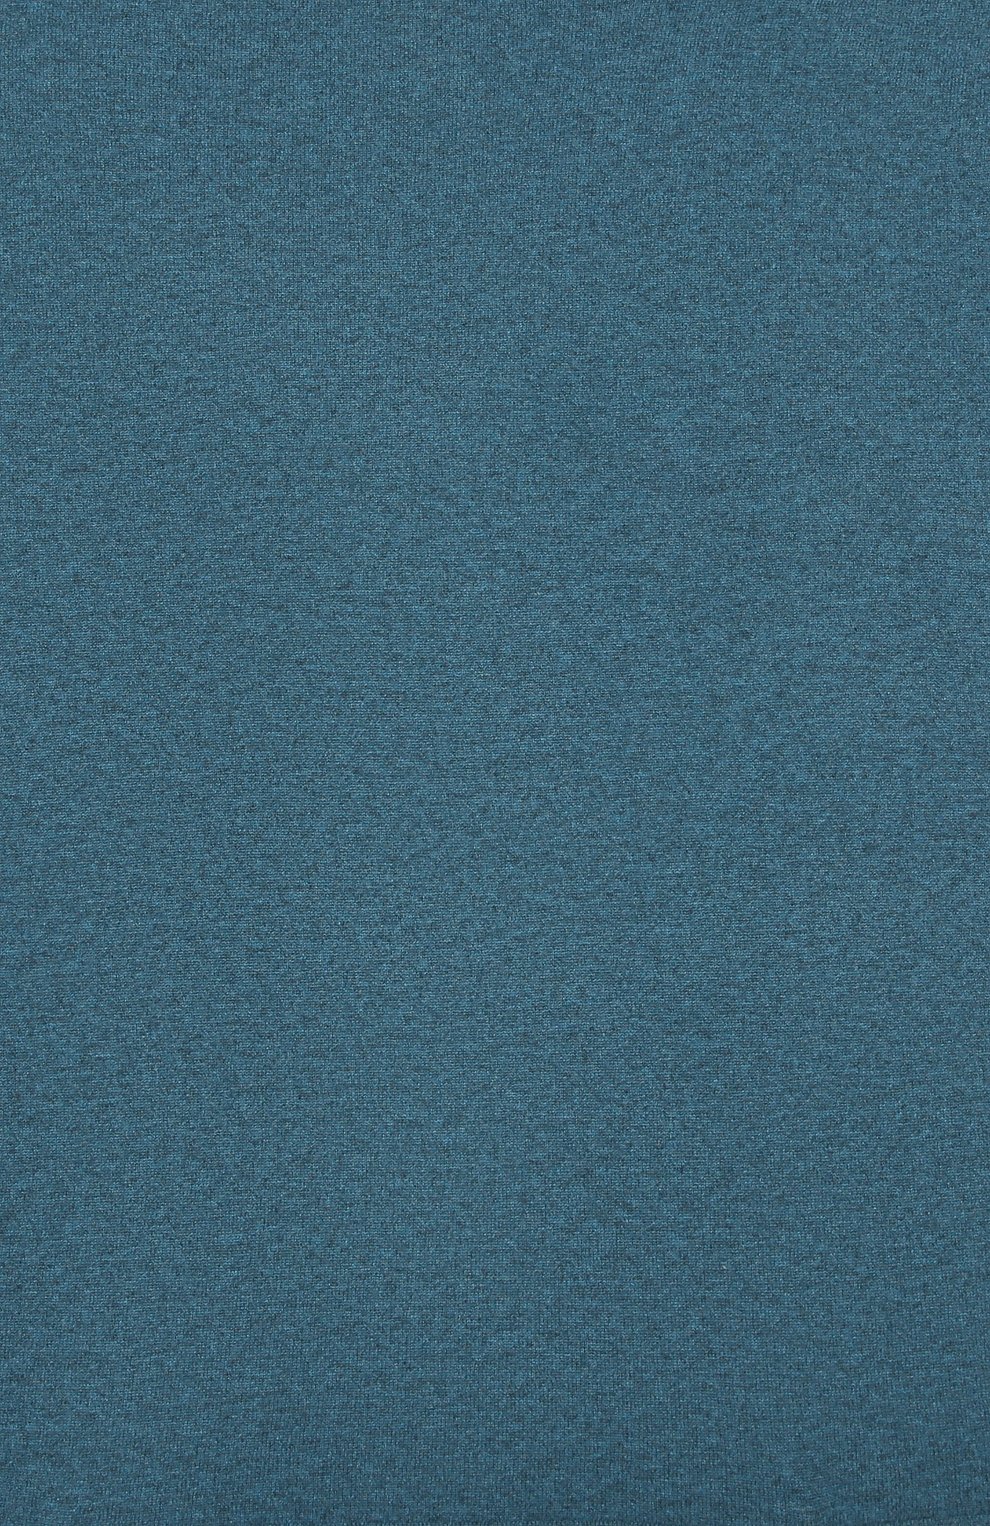 Детского кашемировый плед LES LUTINS PARIS синего цвета, арт. 20H025/CLEMENTINE | Фото 2 (Материал: Текстиль, Кашемир, Шерсть)